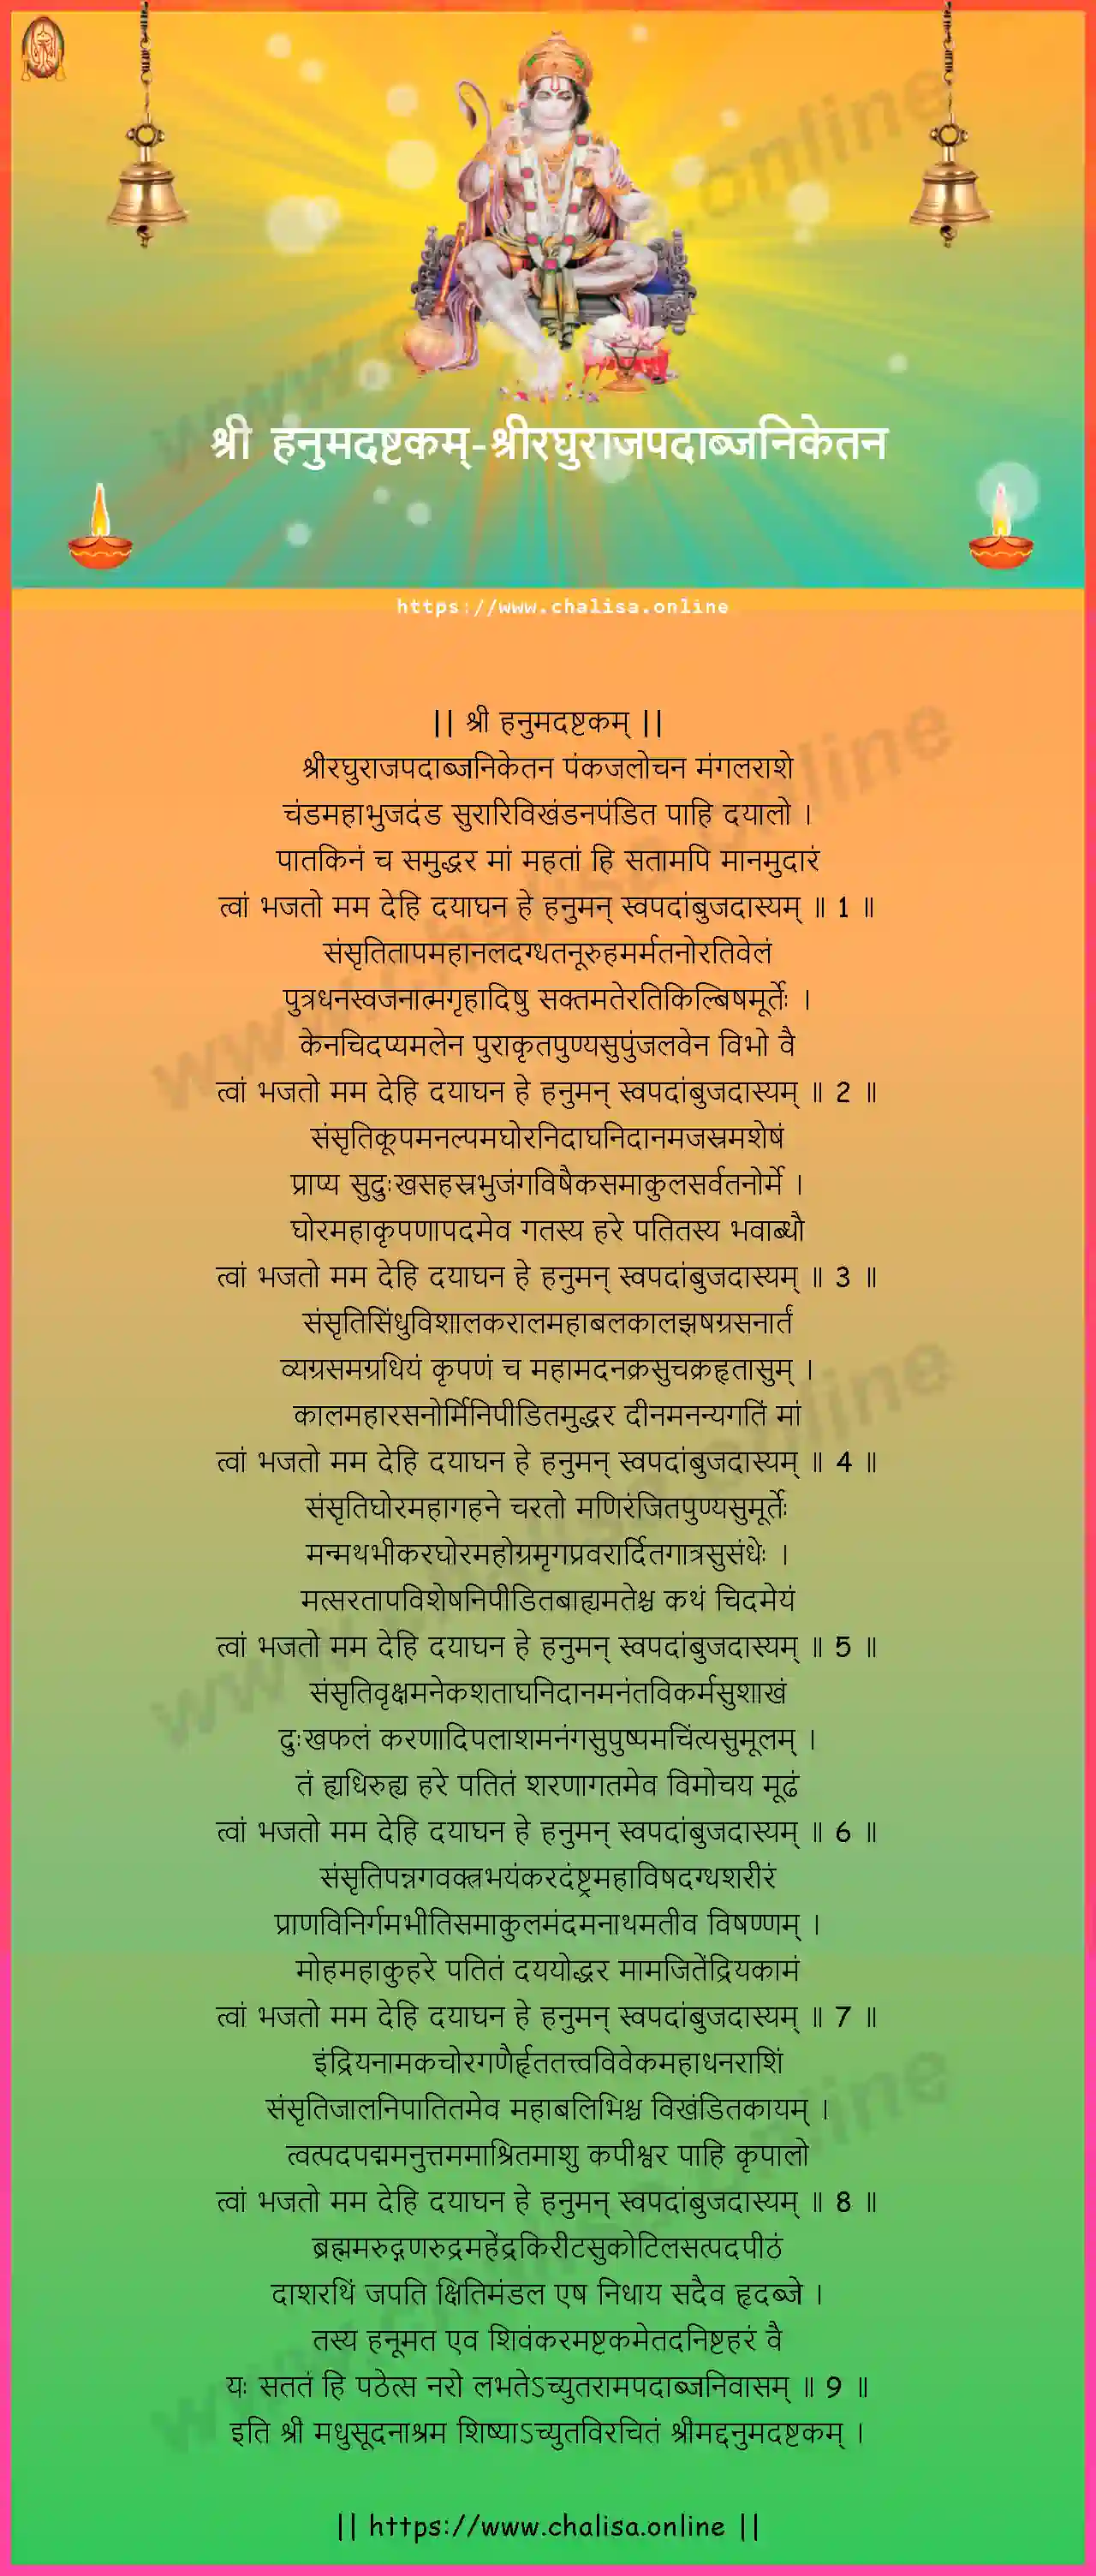 sriraghurajapadabjaniketana-hanuman-ashtakam-hindi-hindi-lyrics-download